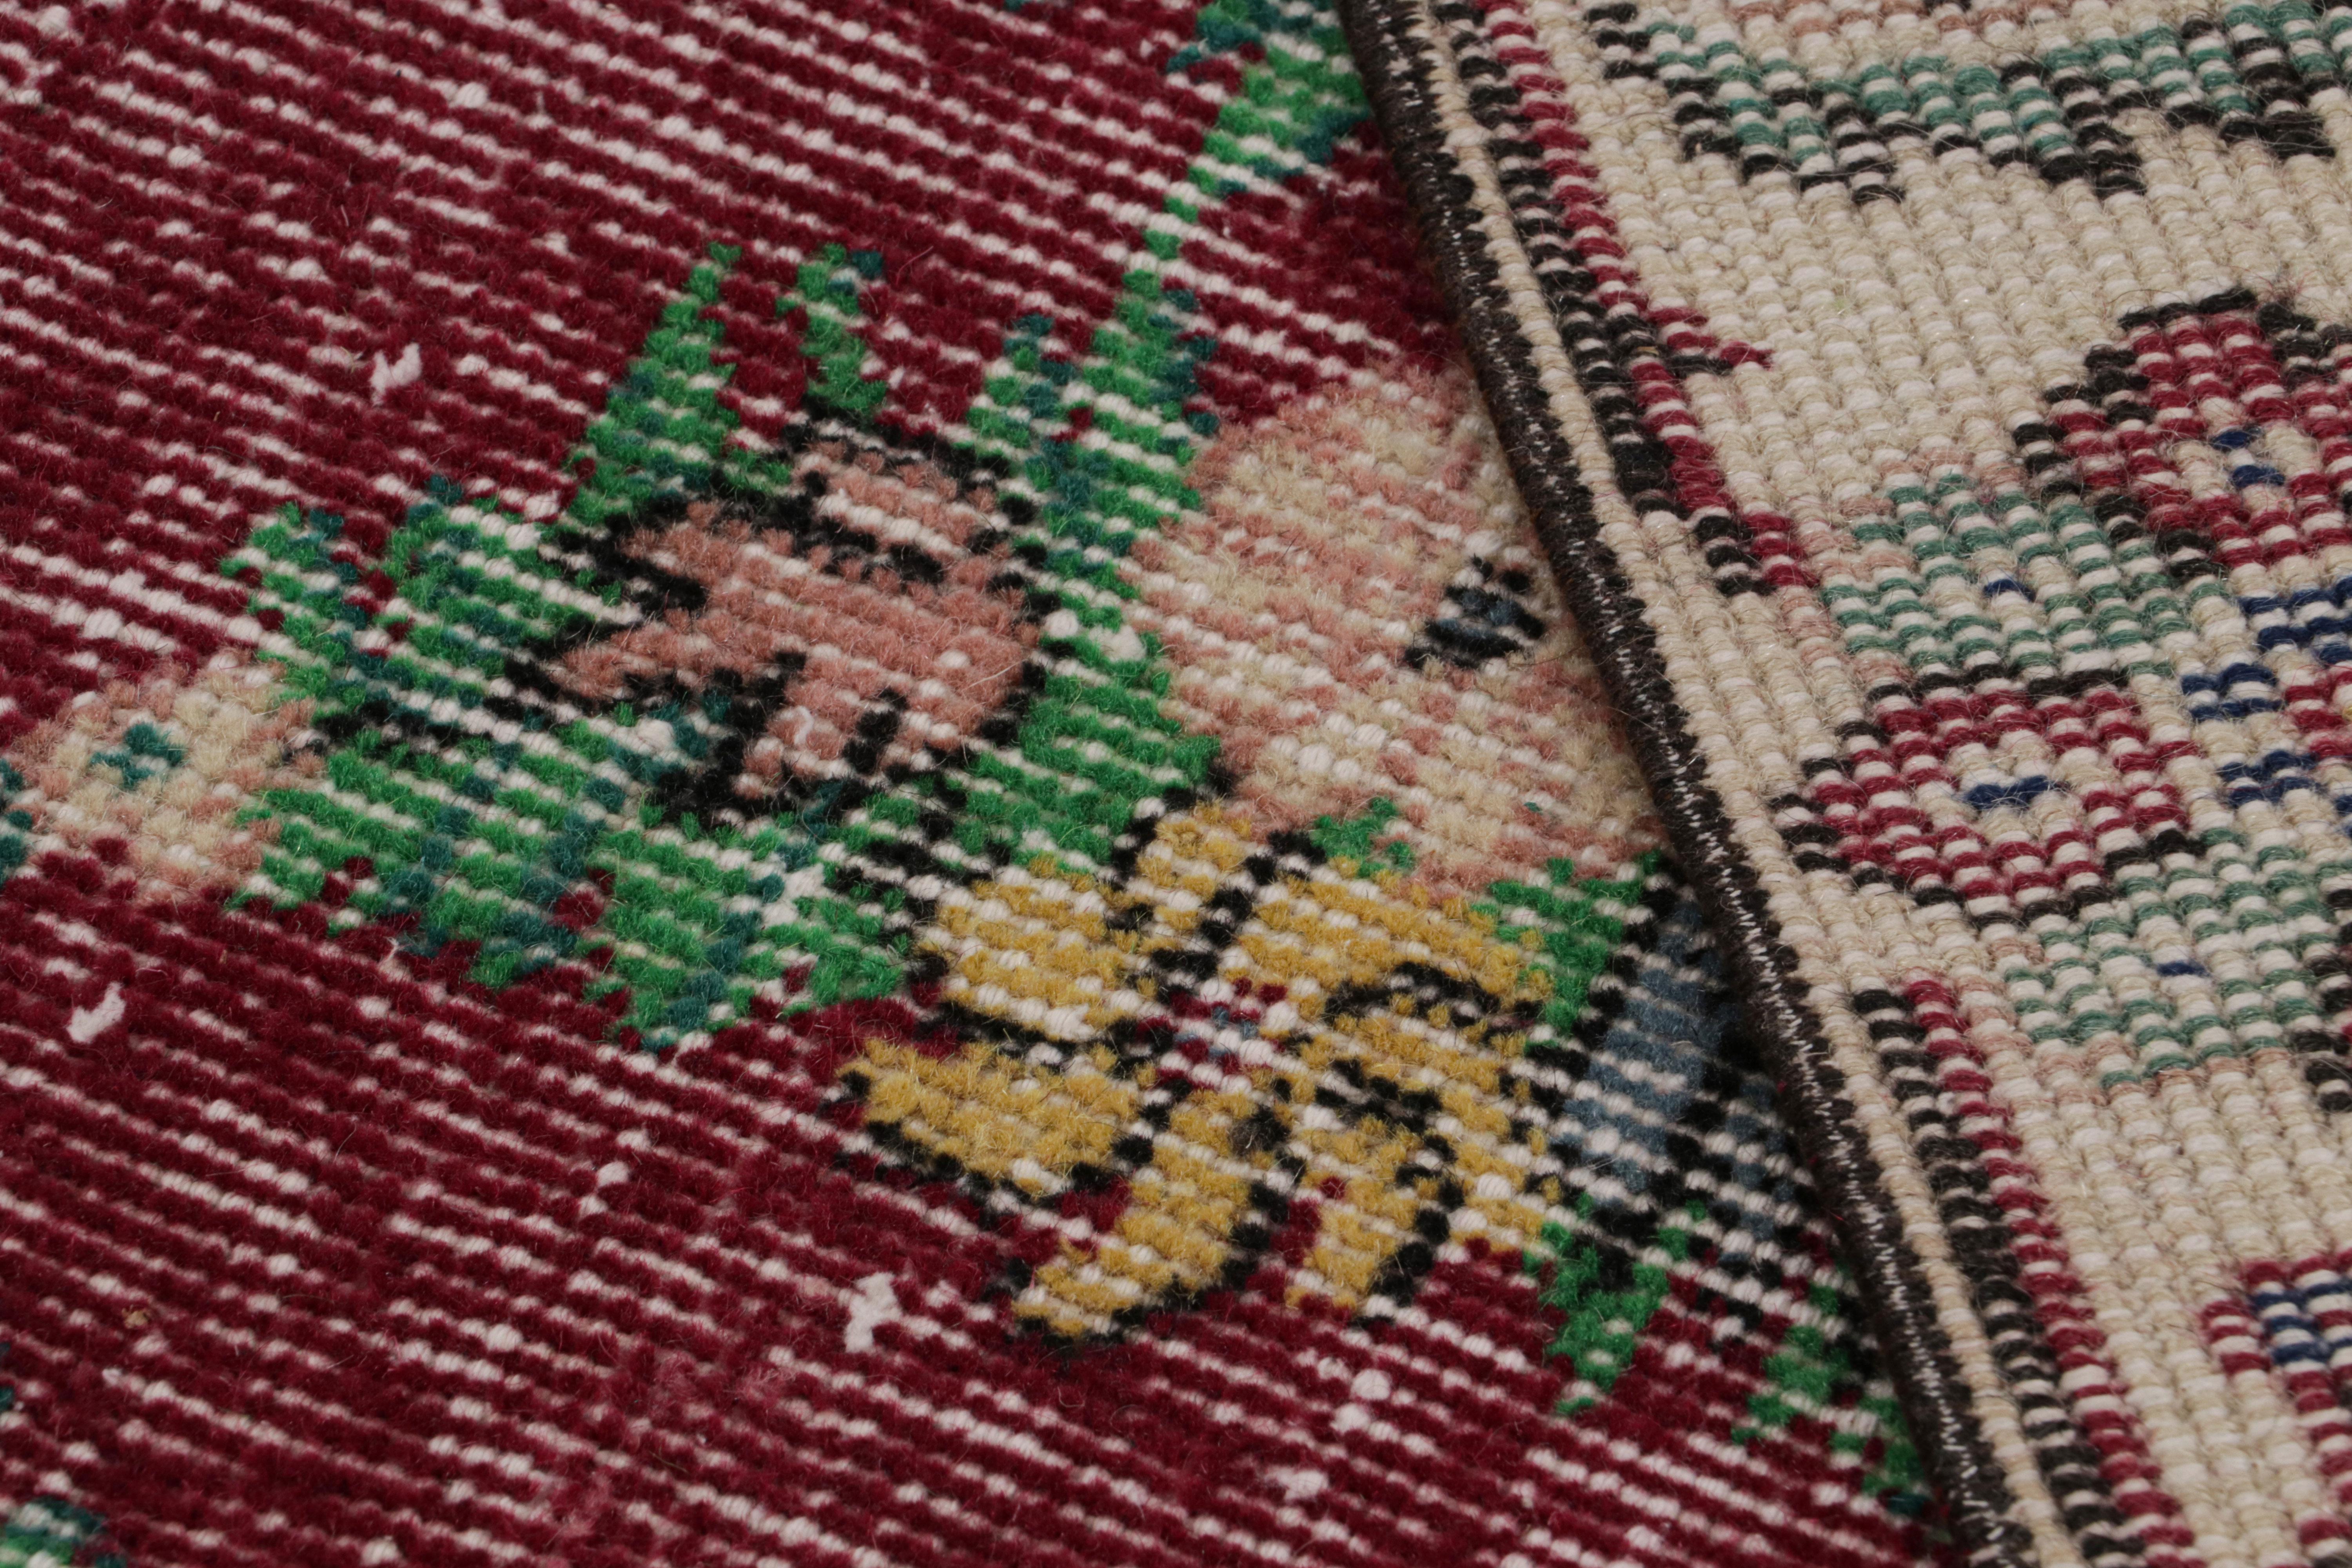 Wool Vintage Zeki Müren Rug in Burgundy with Teal Floral Patterns, from Rug & Kilim For Sale